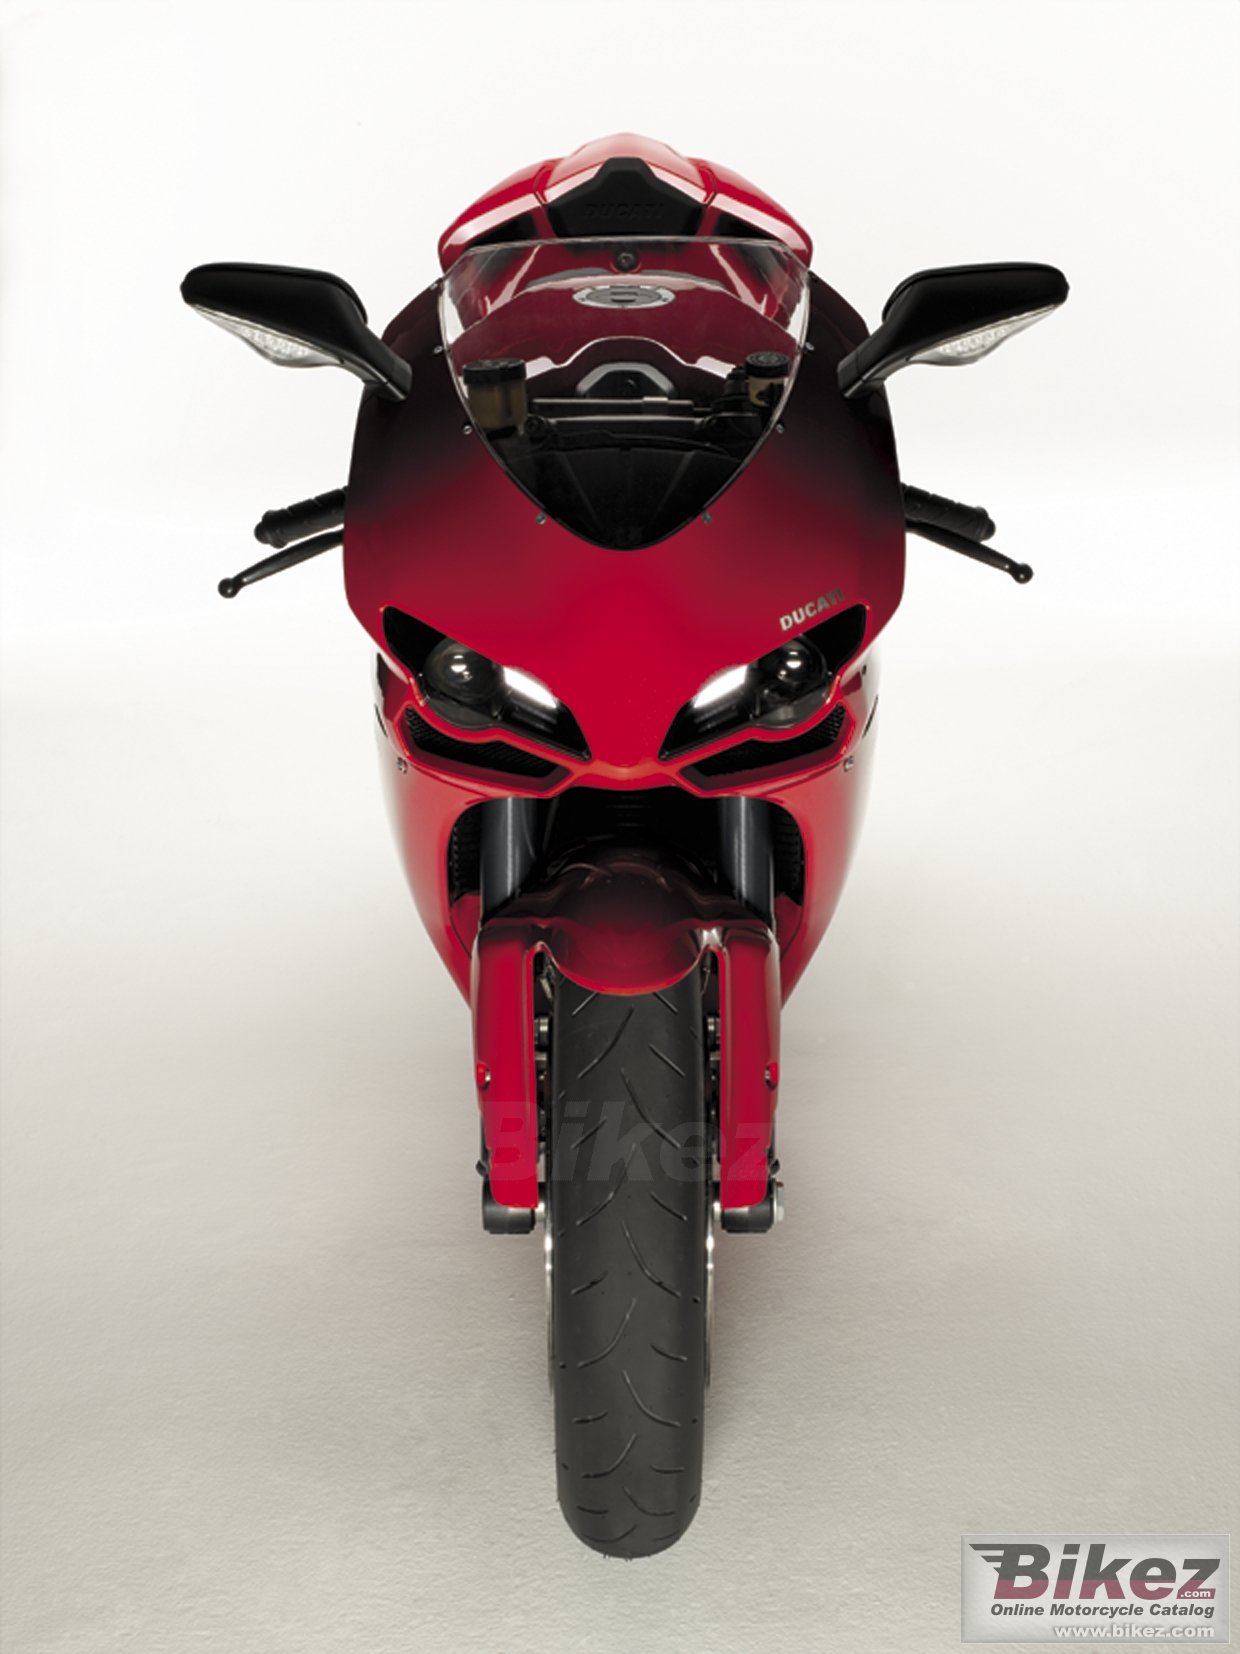 Ducati Superbike 1098